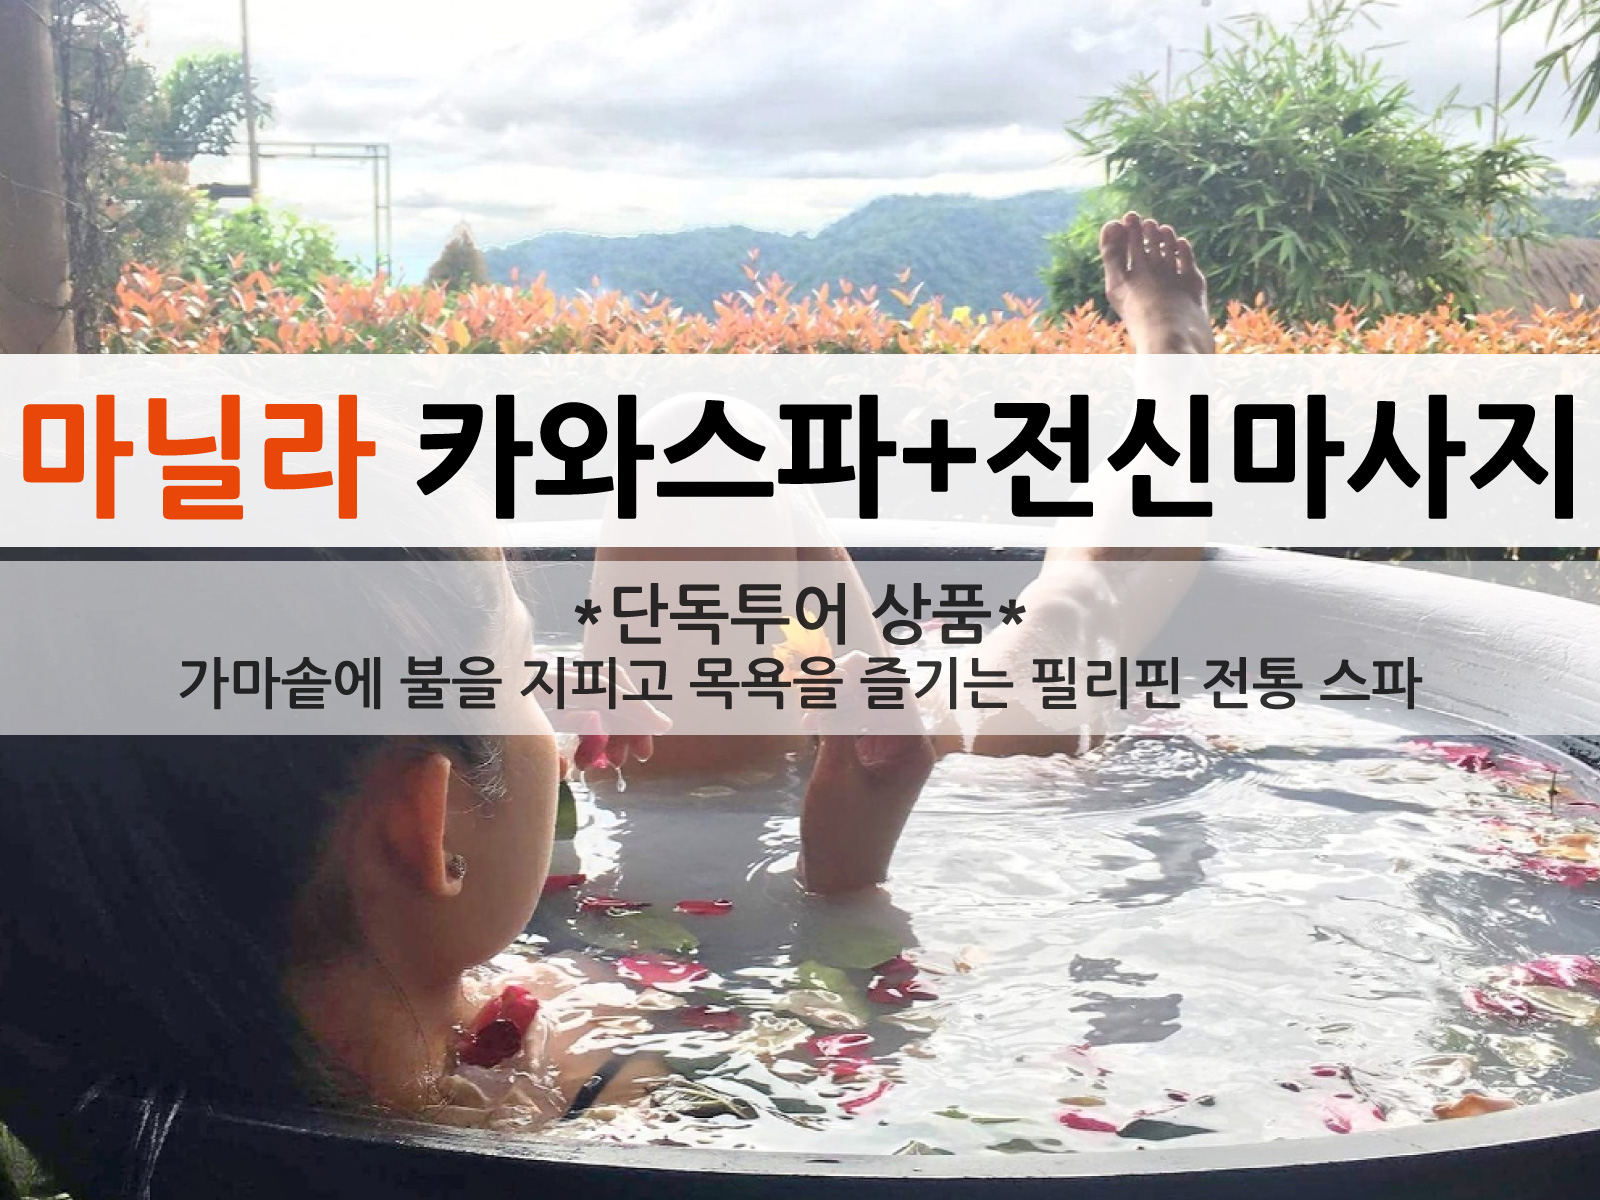 따가이따이 카와 스파 (무쇠솥 목욕) + 1시간 전신 마사지